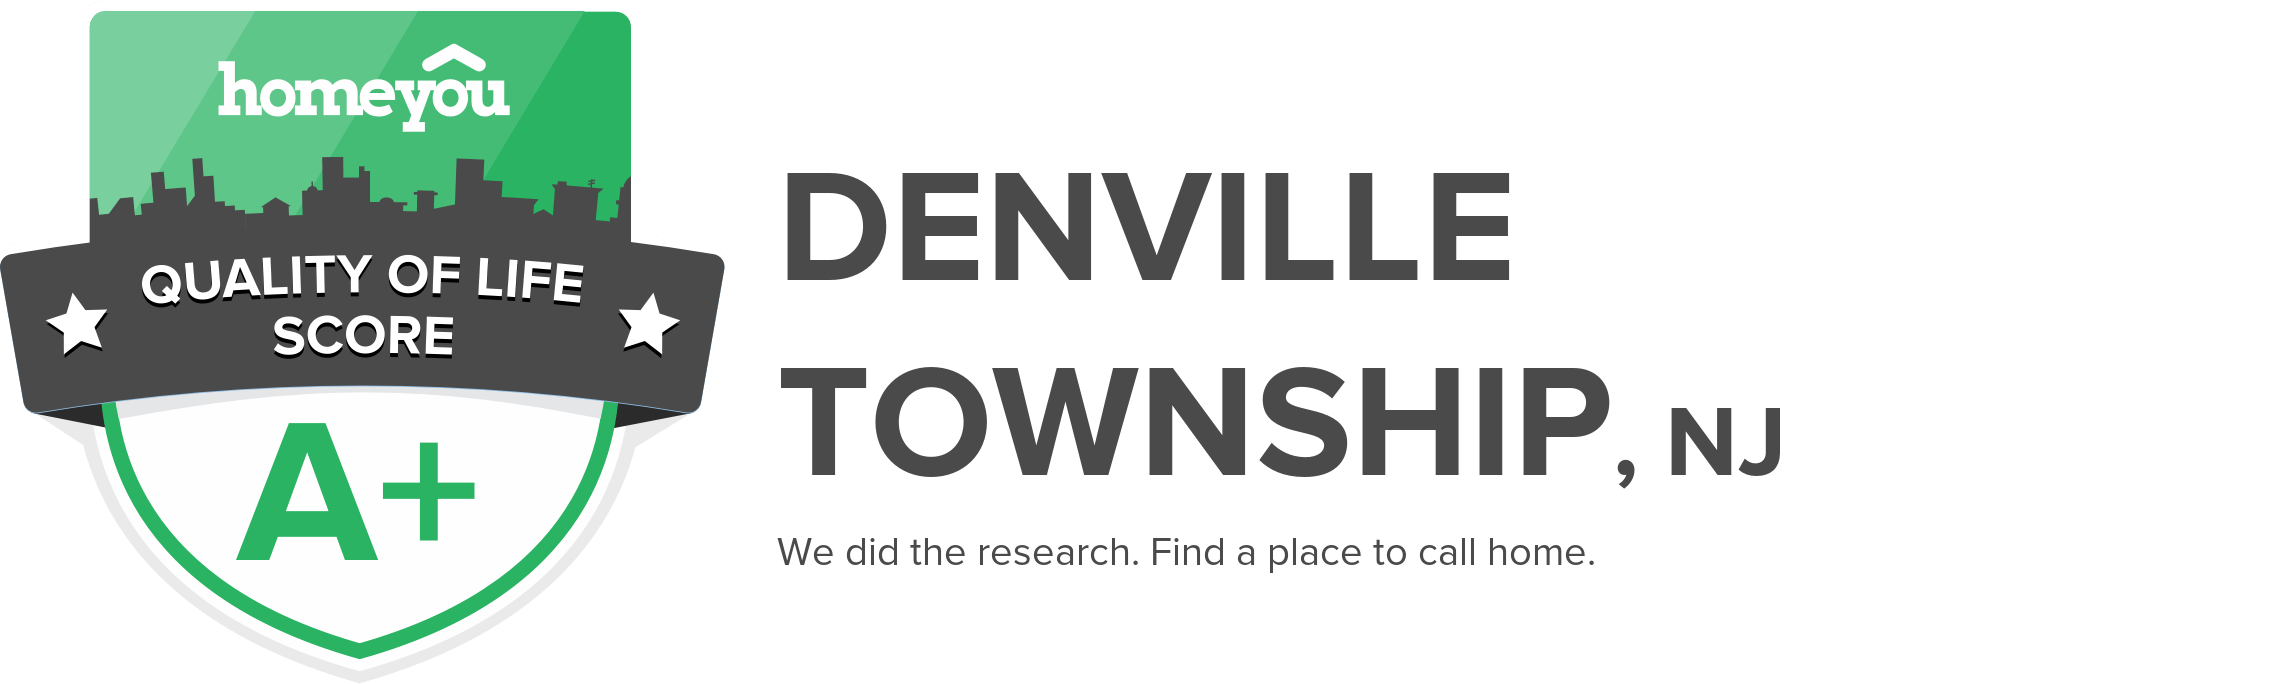 Denville Township, NJ